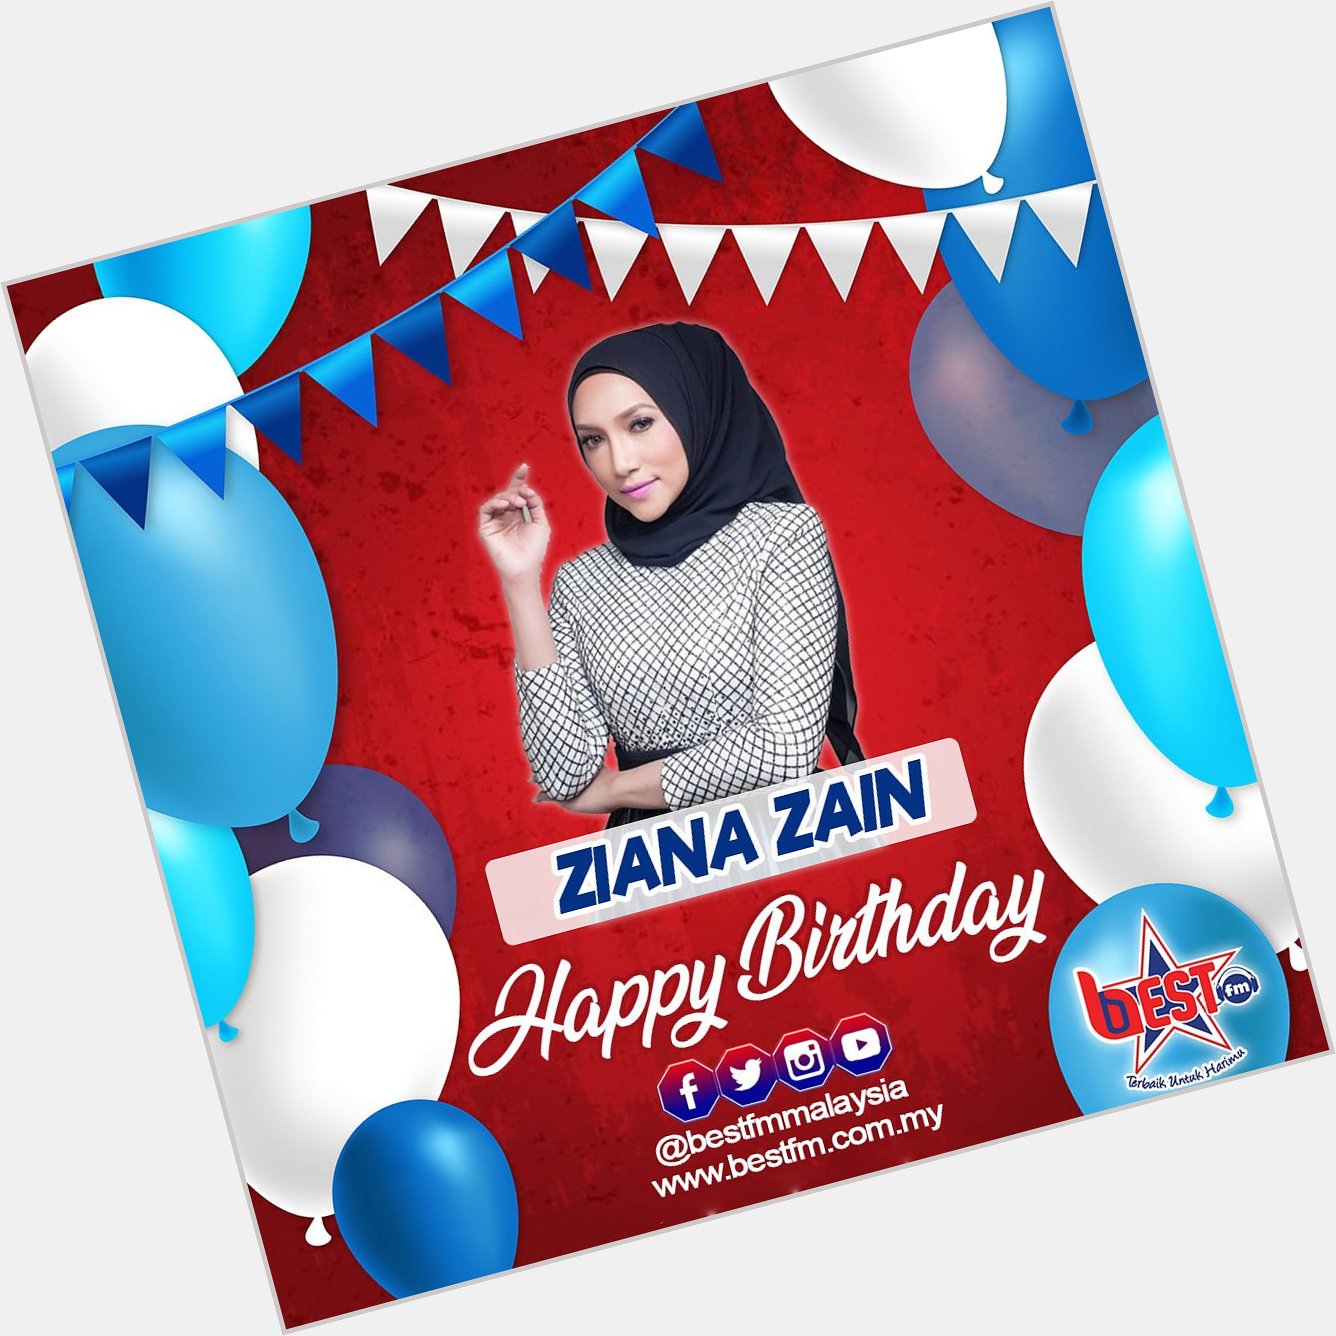 Happy birthday Ziana Zain!! 